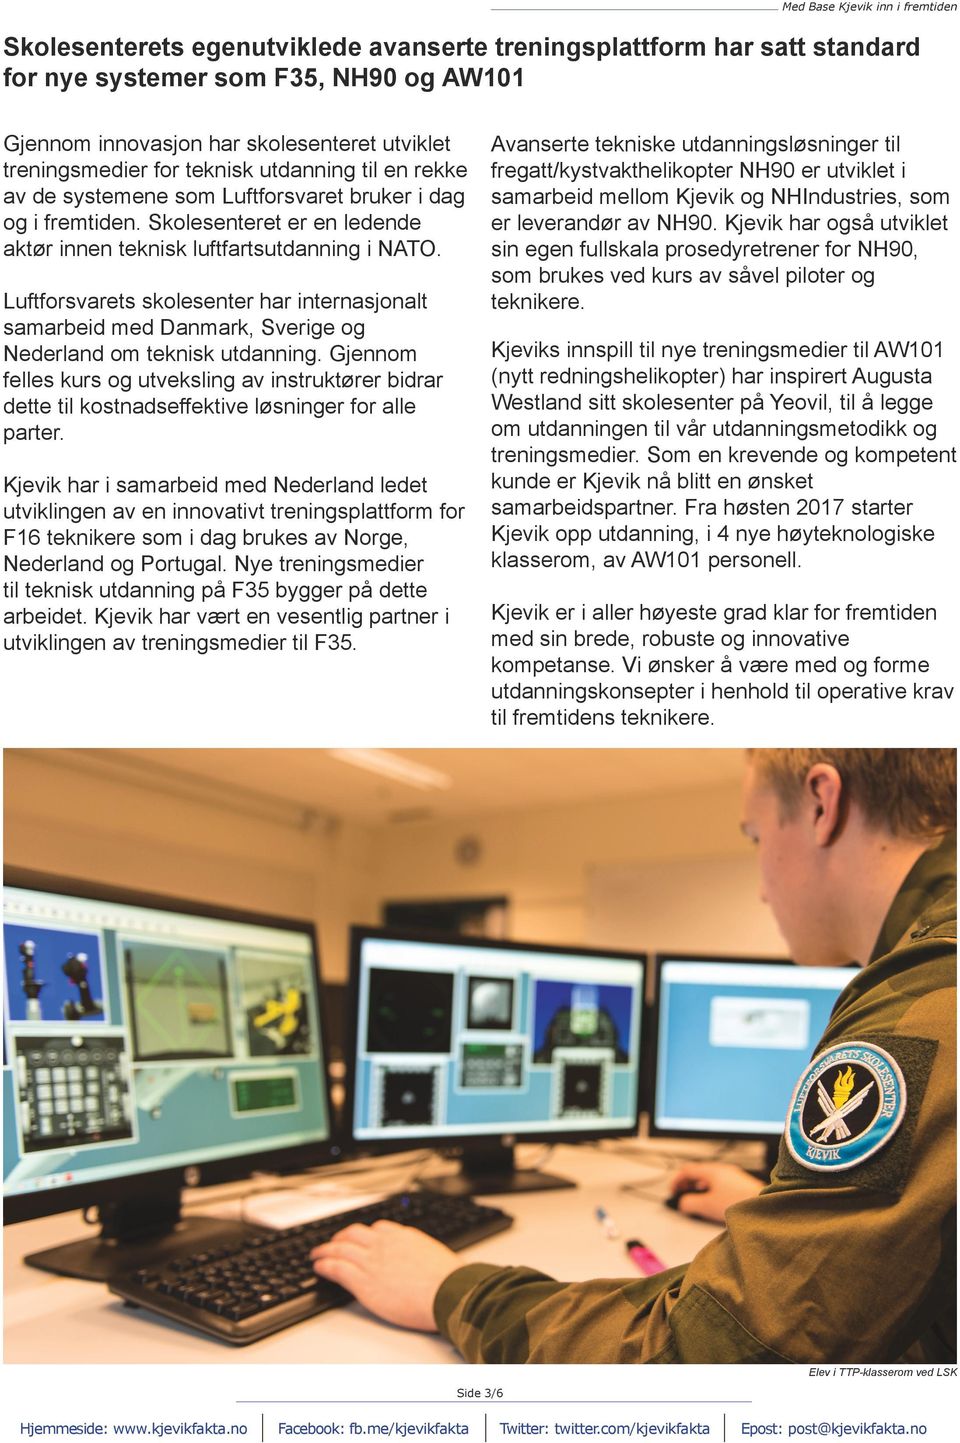 Luftforsvarets skolesenter har internasjonalt samarbeid med Danmark, Sverige og Nederland om teknisk utdanning.